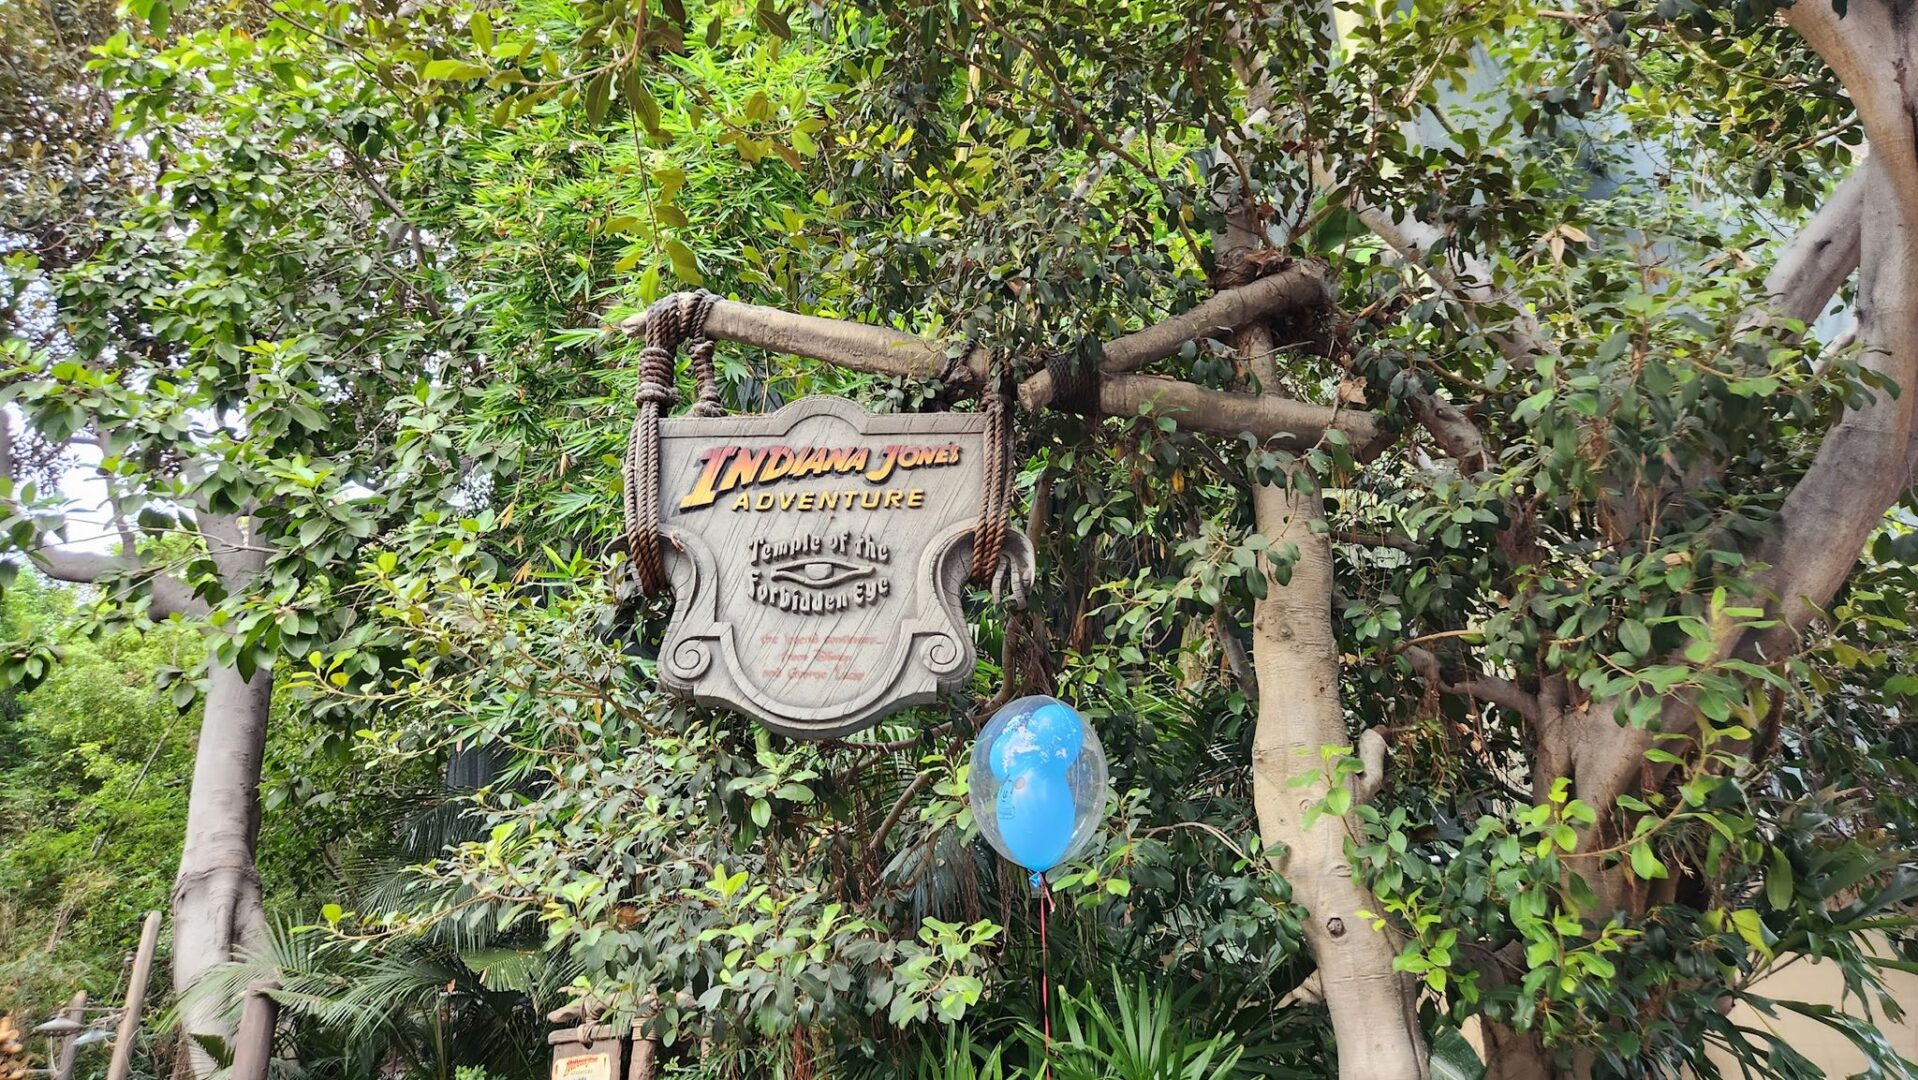 Indiana Jones Adventure Expected to Reopen This Week in Disneyland